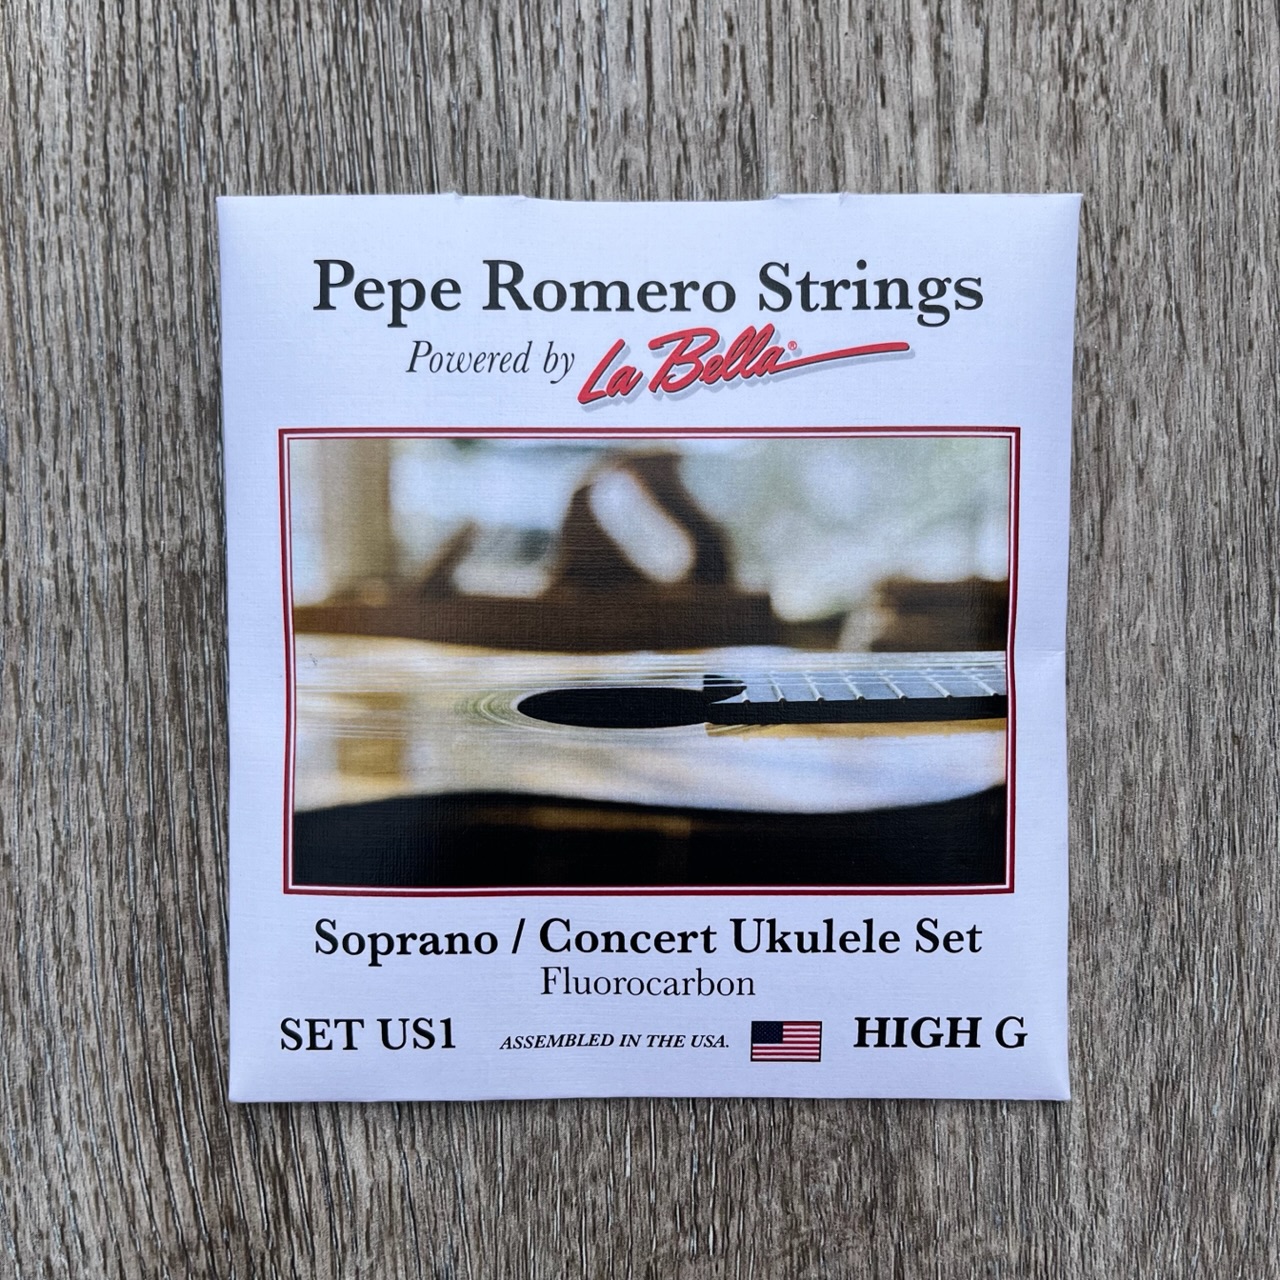 Romero sopraan/concert high g